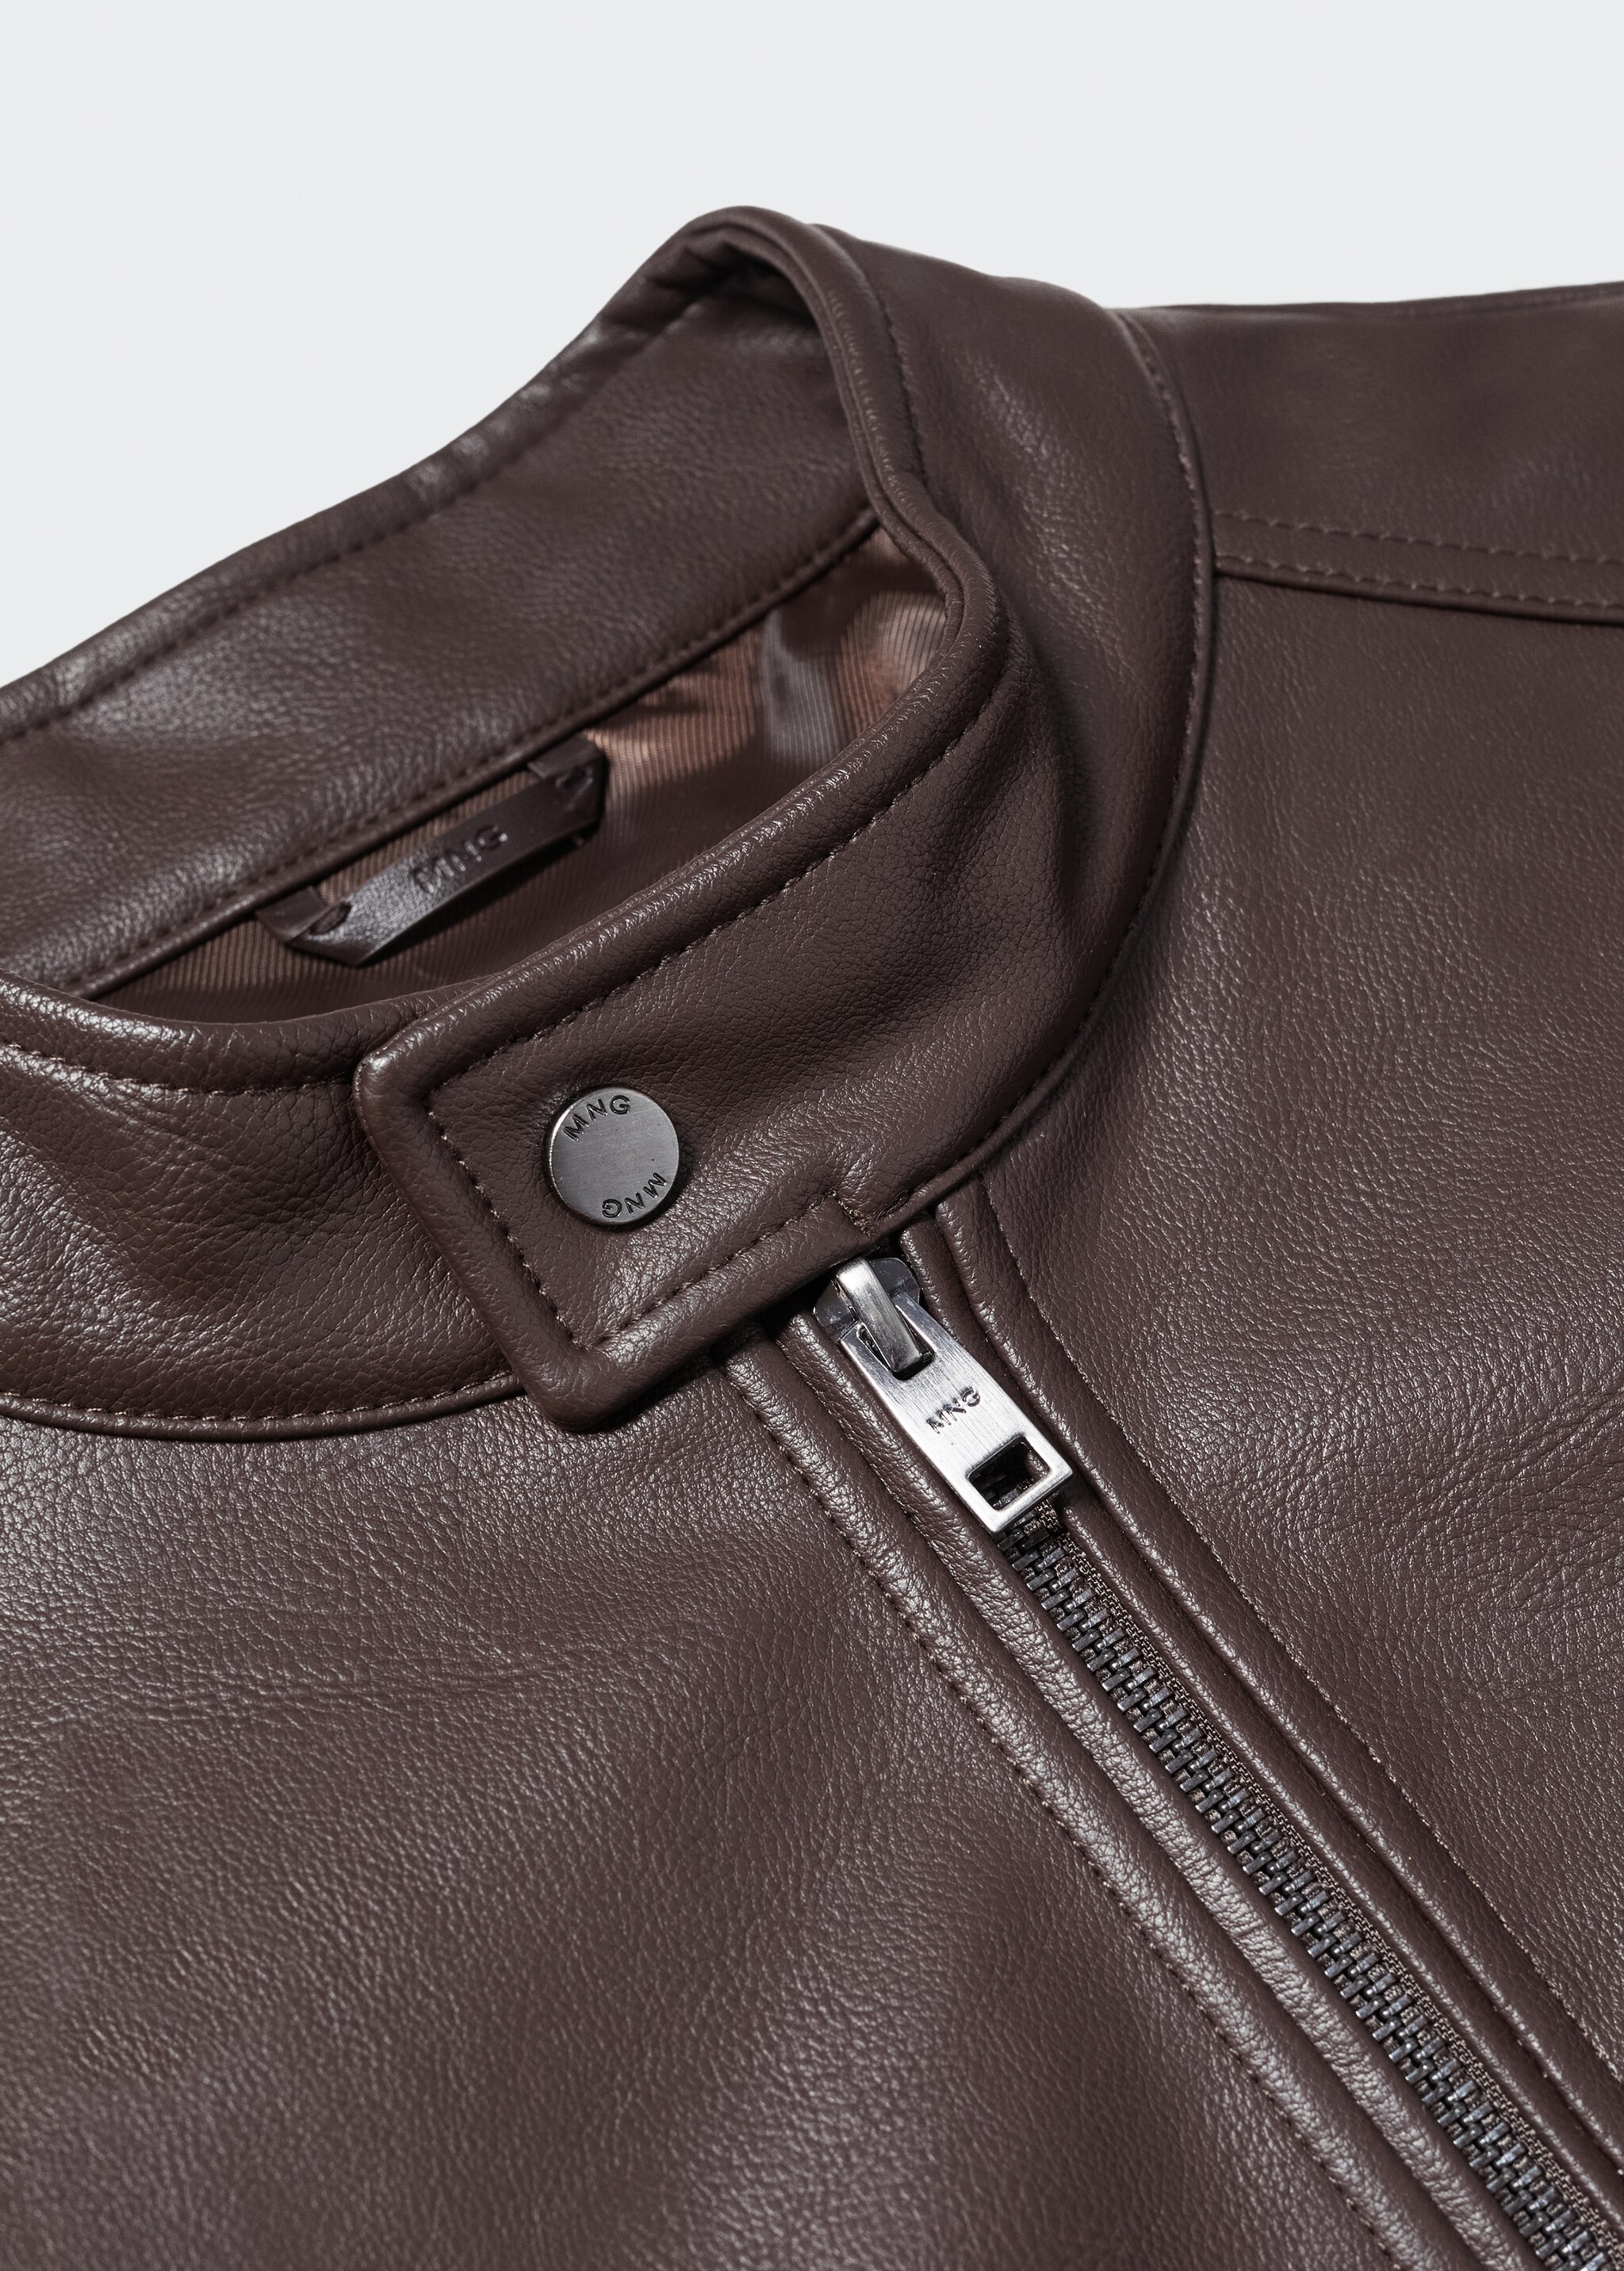 Zipper-Jacke mit Leder-Effekt - Detail des Artikels 8